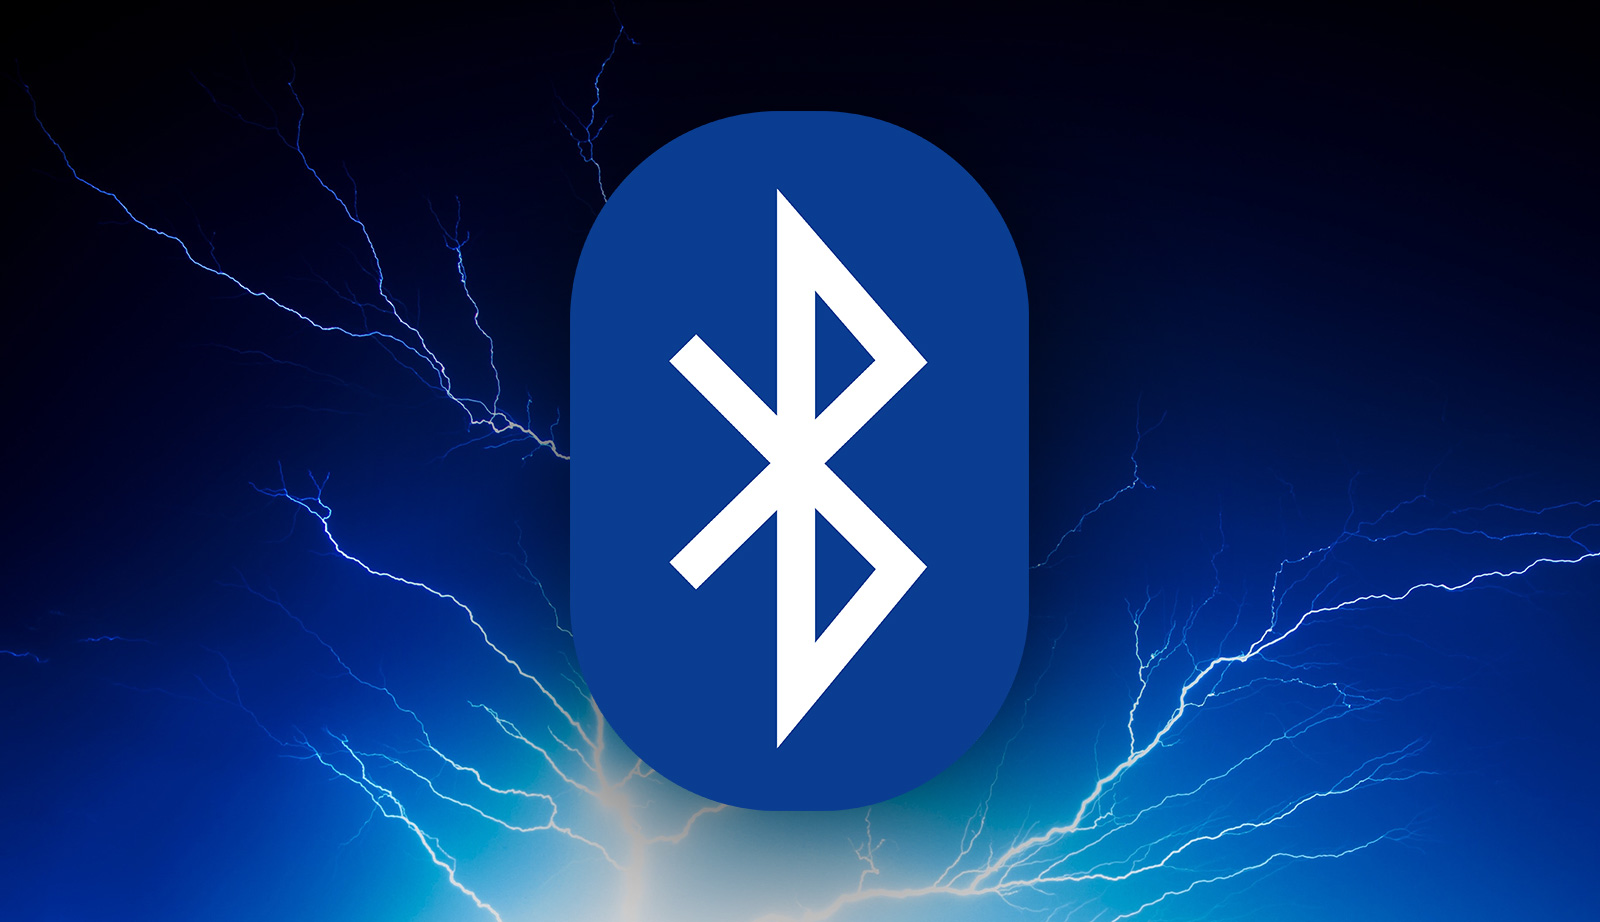 Bluetooth версия 10